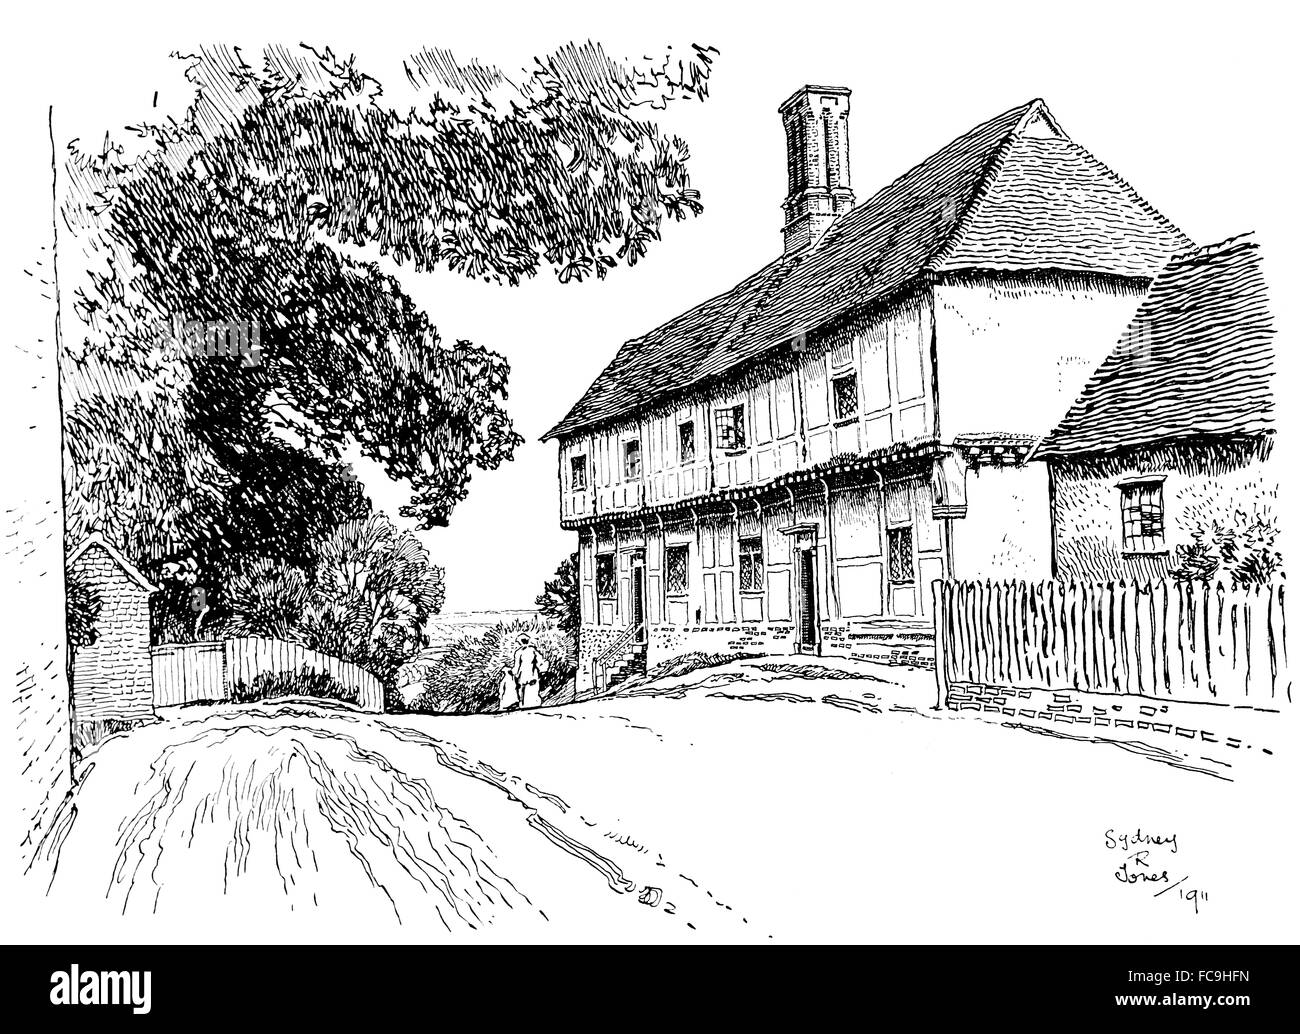 Regno Unito, Inghilterra, Suffolk, Stoke da Nayland, legno incorniciata house, 1911, illustrazione di linea da, Sydney R Jones, dallo Studio Magazin Foto Stock